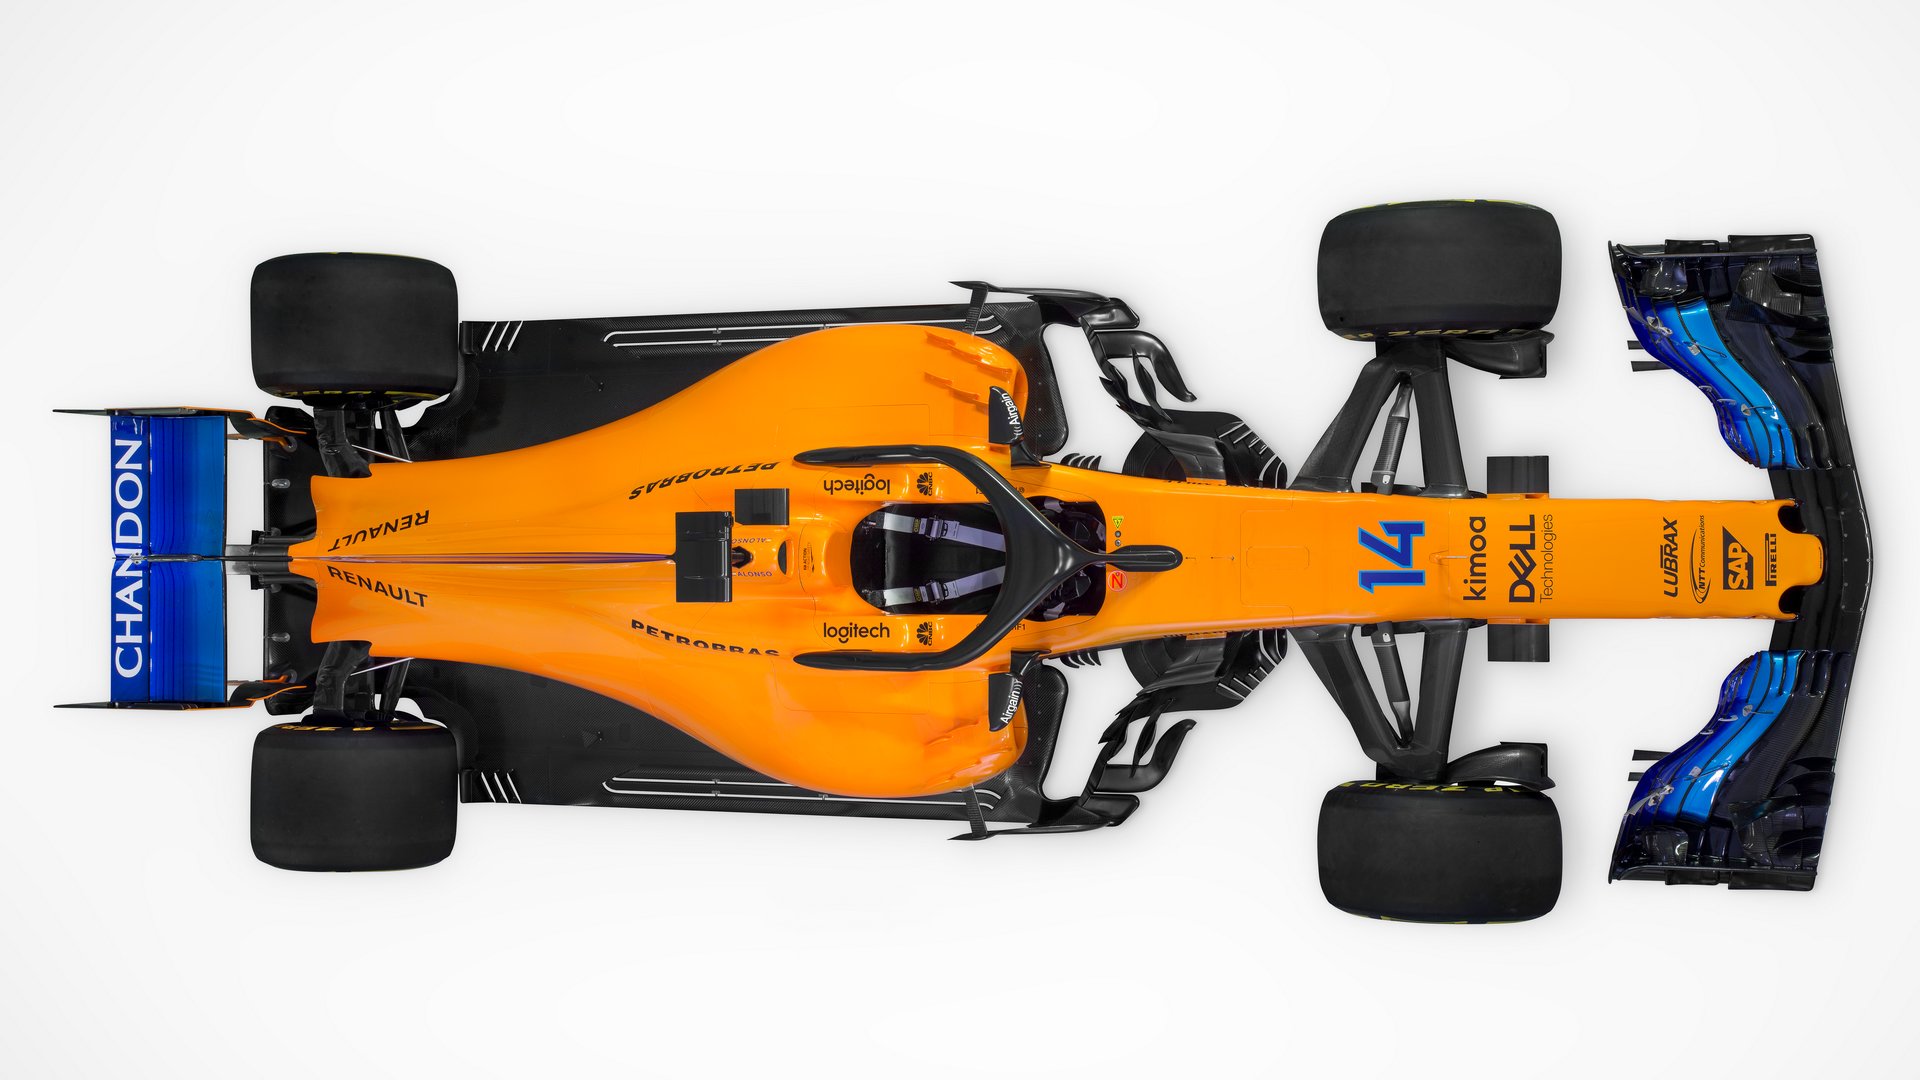 Představení nového vozu McLaren MCL33 - Renault pro sezónu 2018